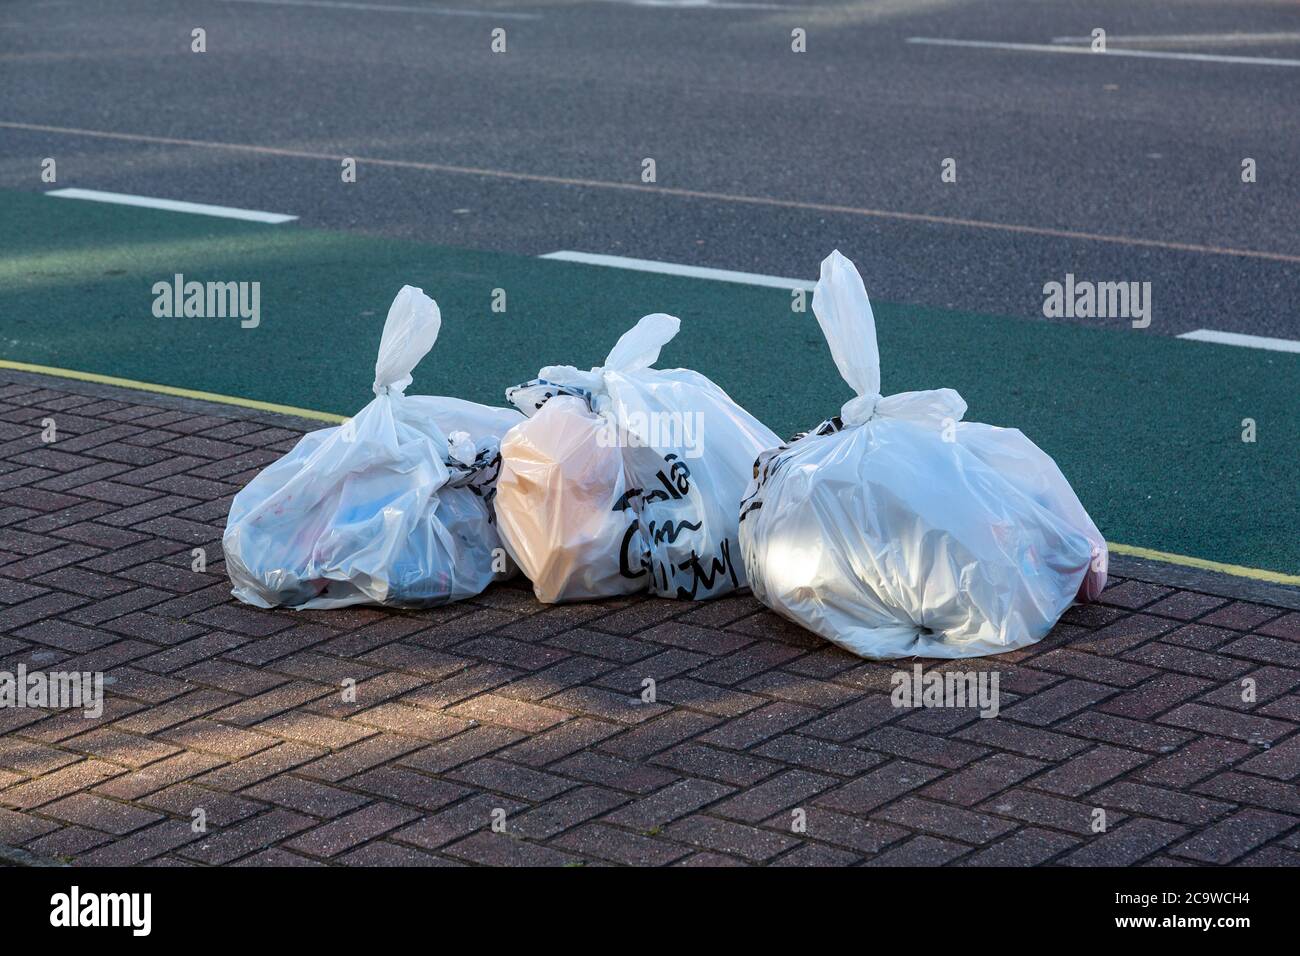 Weiße Müllsäcke oder Müllsäcke auf der Straße bereit zur Abholung  Stockfotografie - Alamy